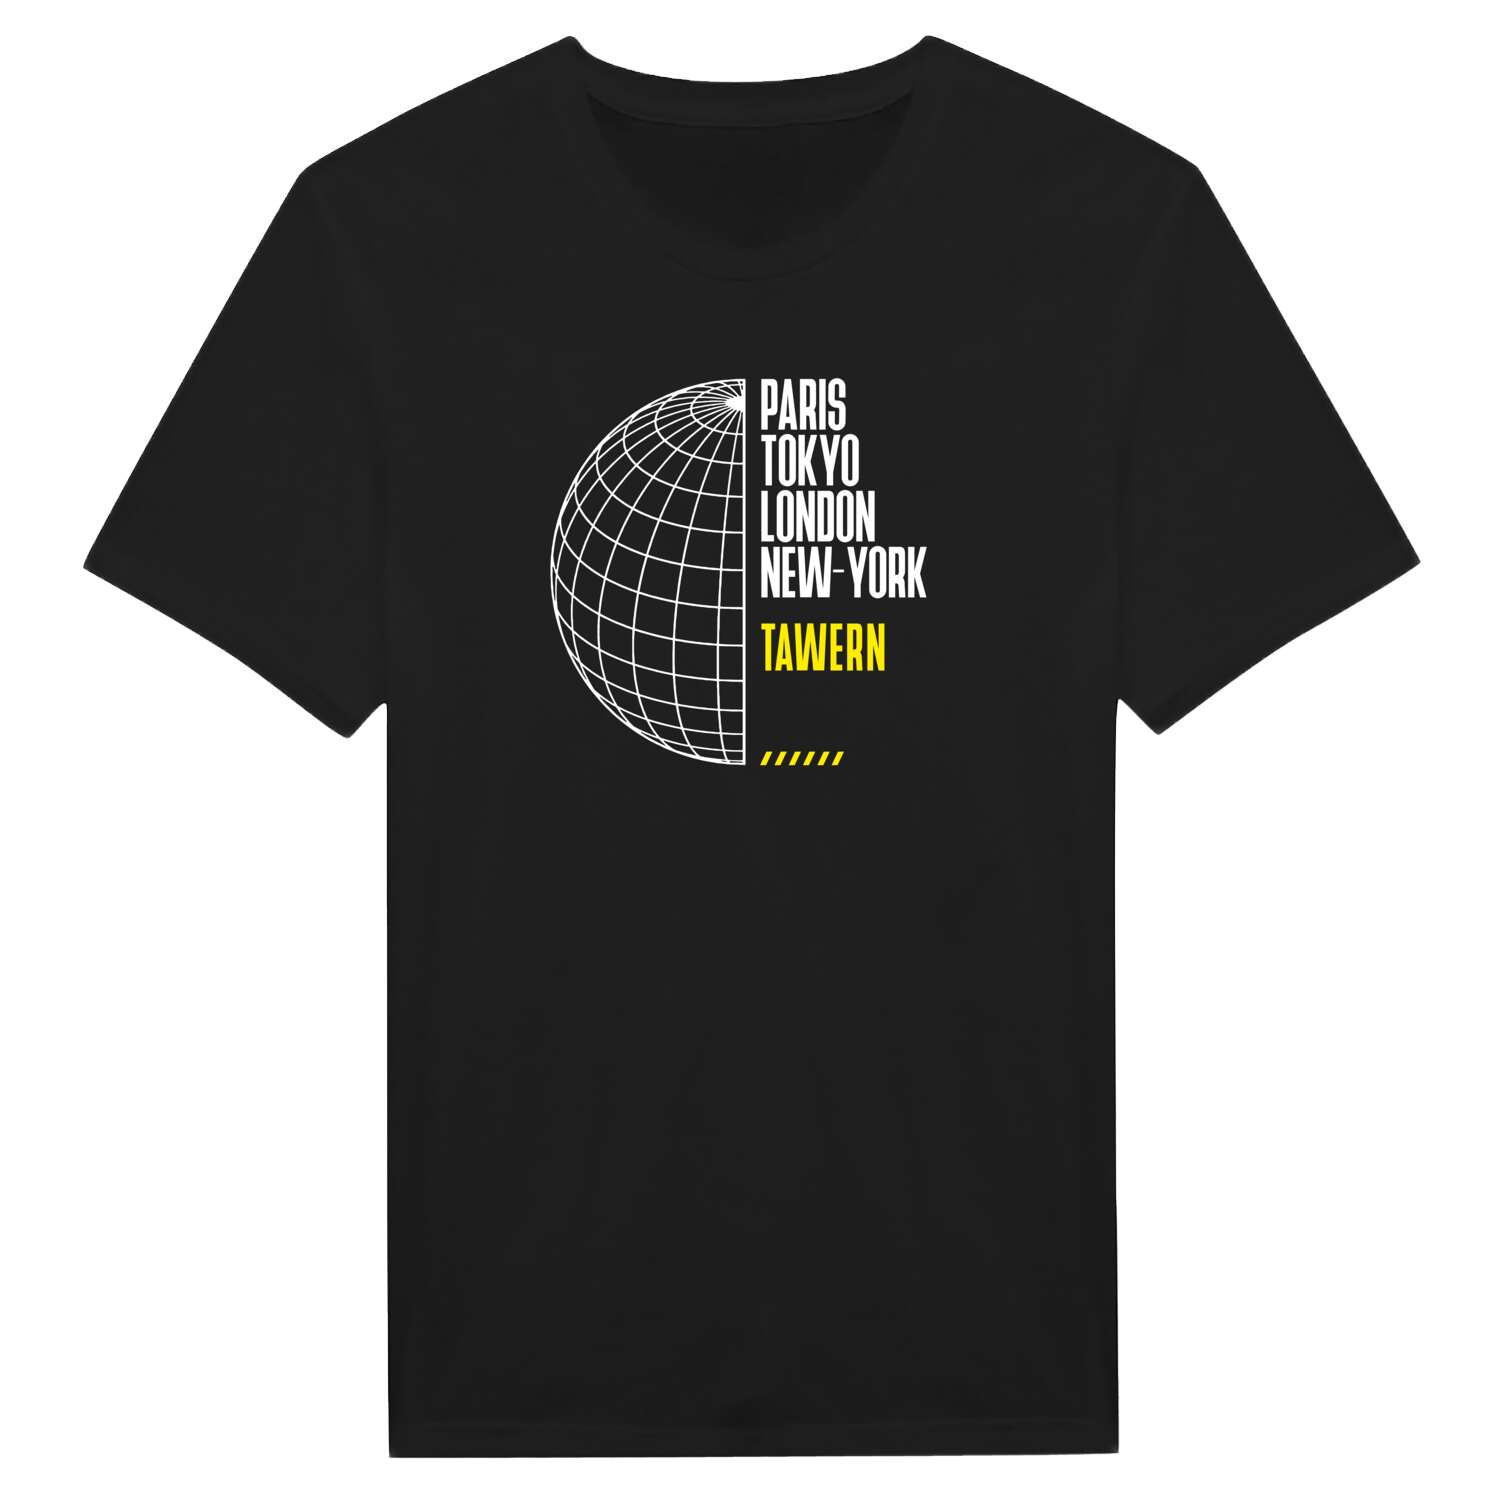 Tawern T-Shirt »Paris Tokyo London«